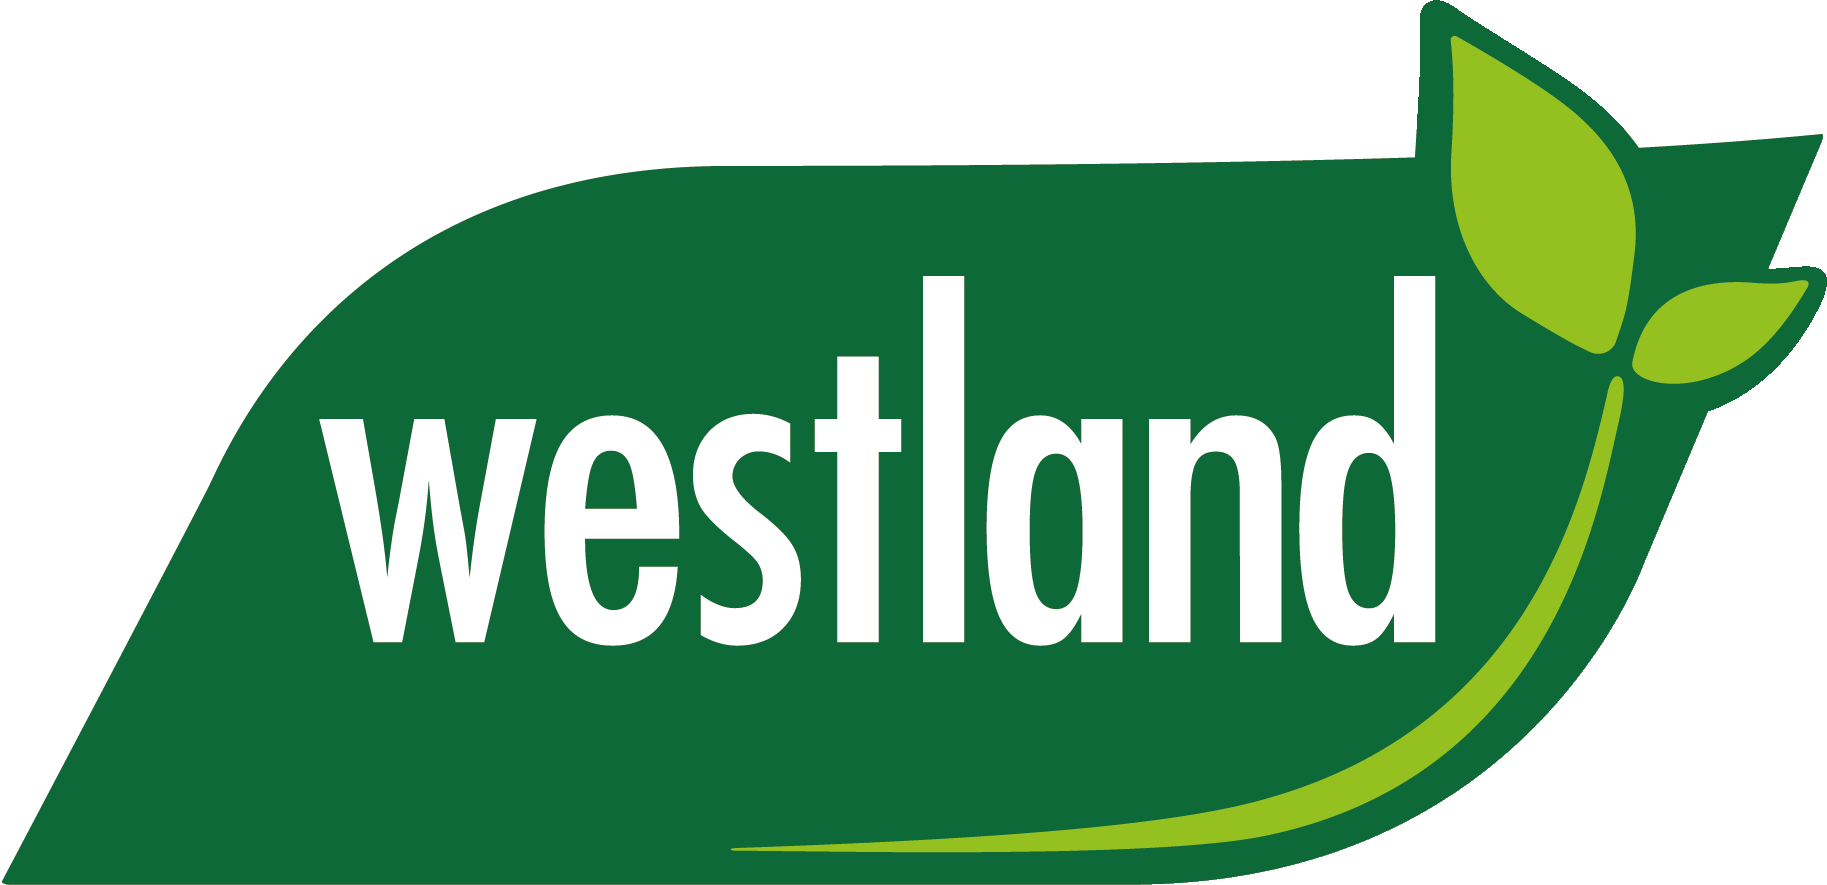 Explore Westland range